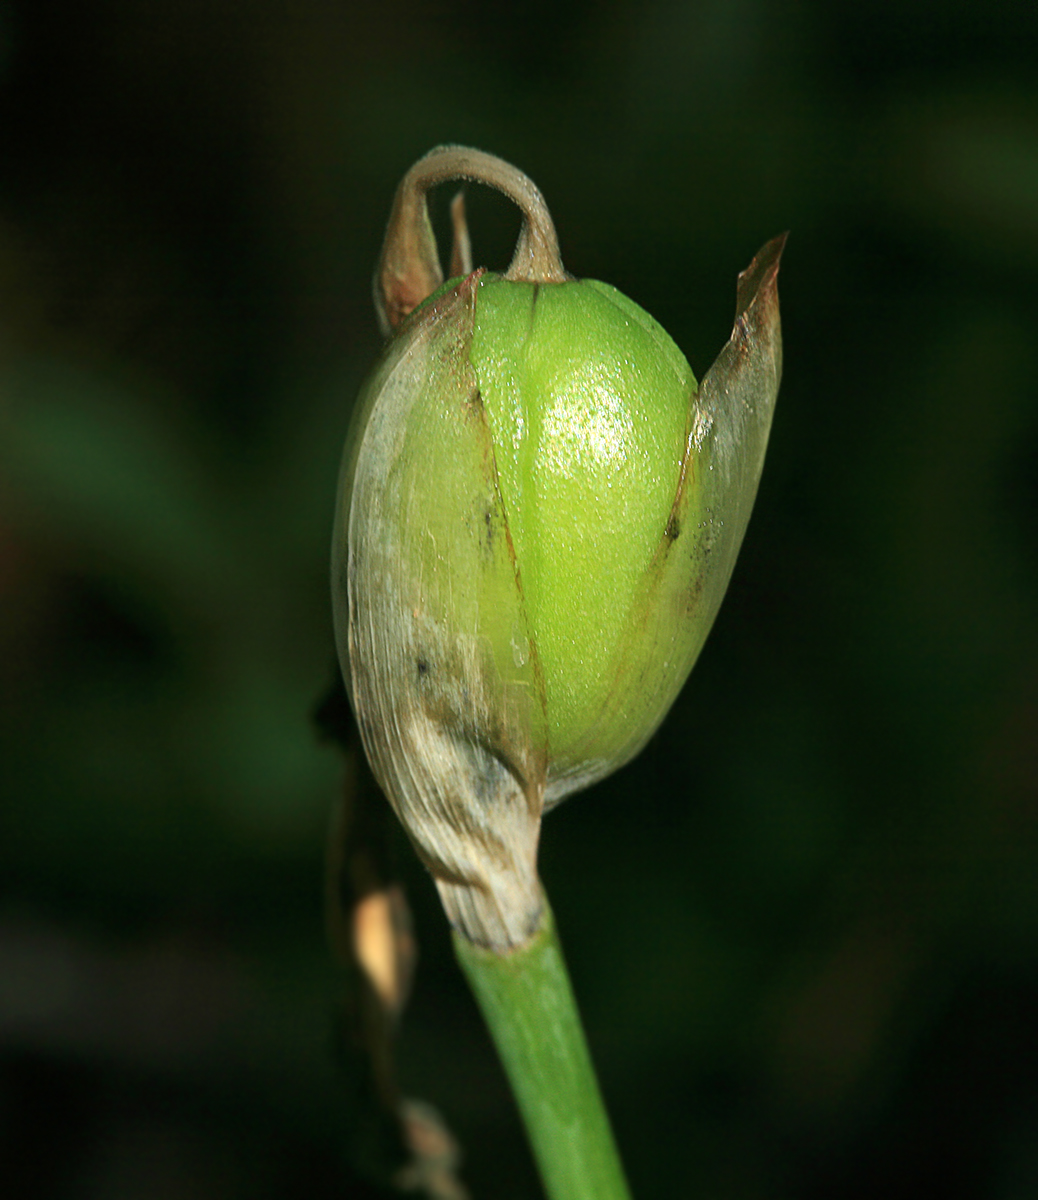 Image of Iris uniflora specimen.